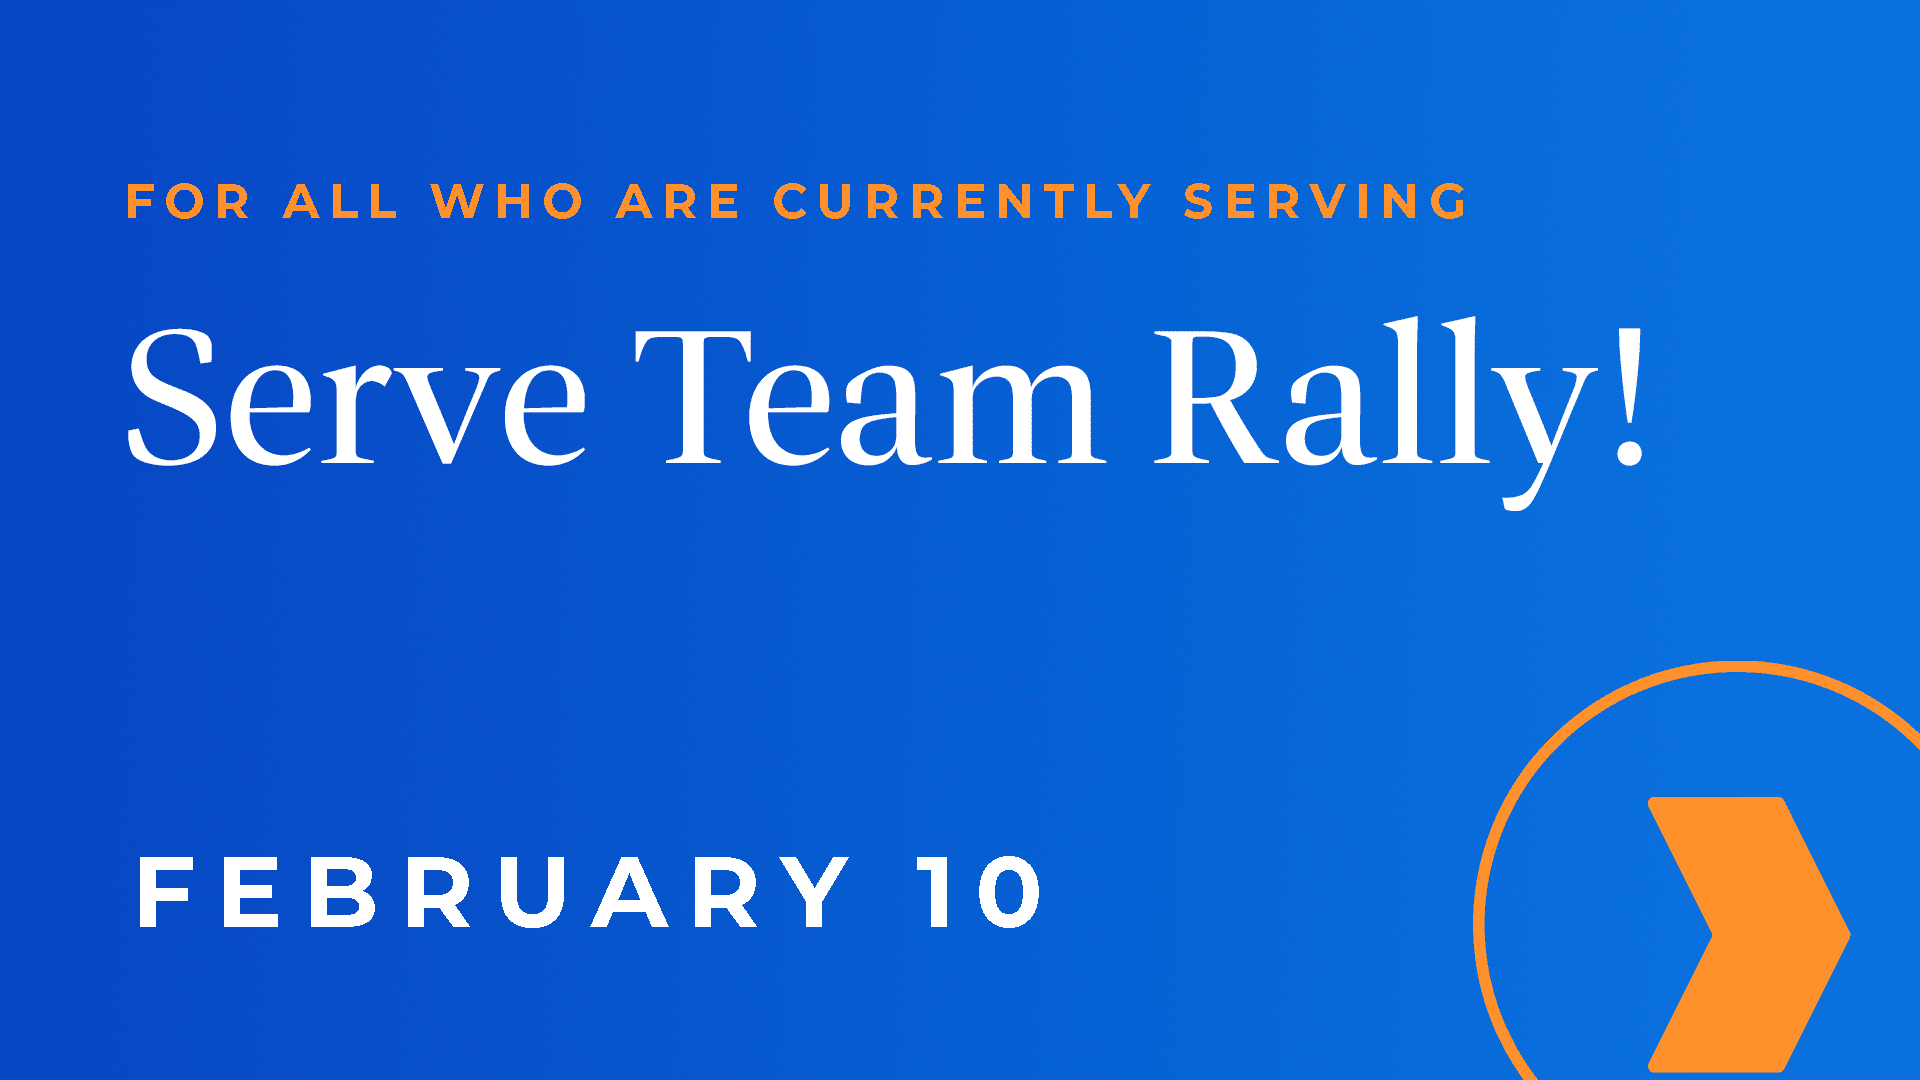 Serve Team Rally Feb 10 - Serve Team Rally!